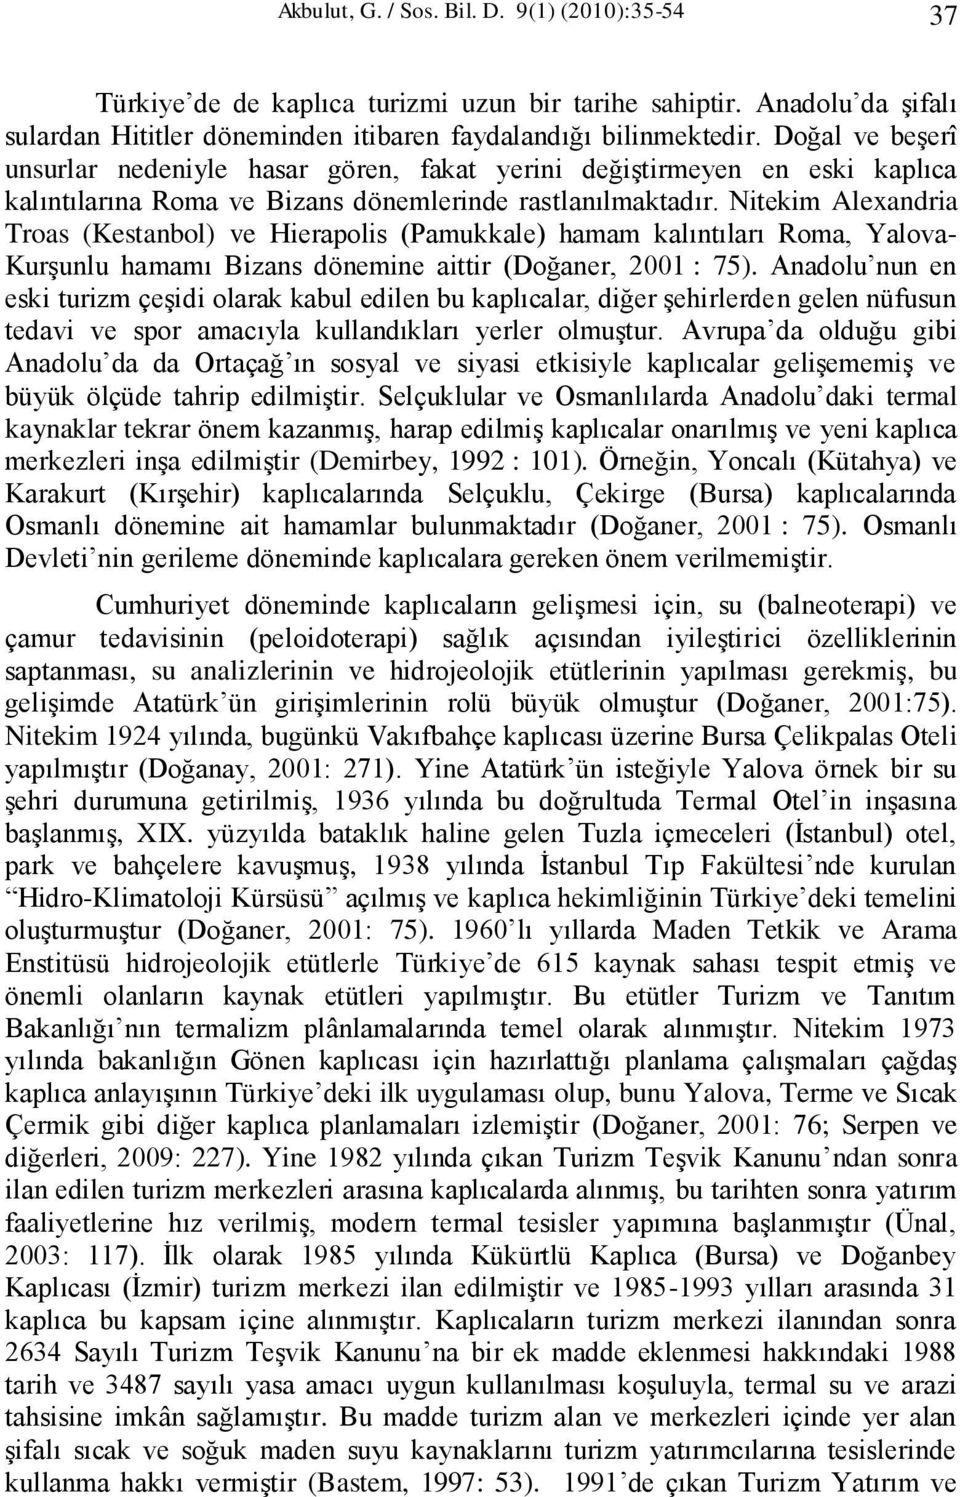 Nitekim Alexandria Troas (Kestanbol) ve Hierapolis (Pamukkale) hamam kalıntıları Roma, Yalova- Kurşunlu hamamı Bizans dönemine aittir (Doğaner, 2001 : 75).